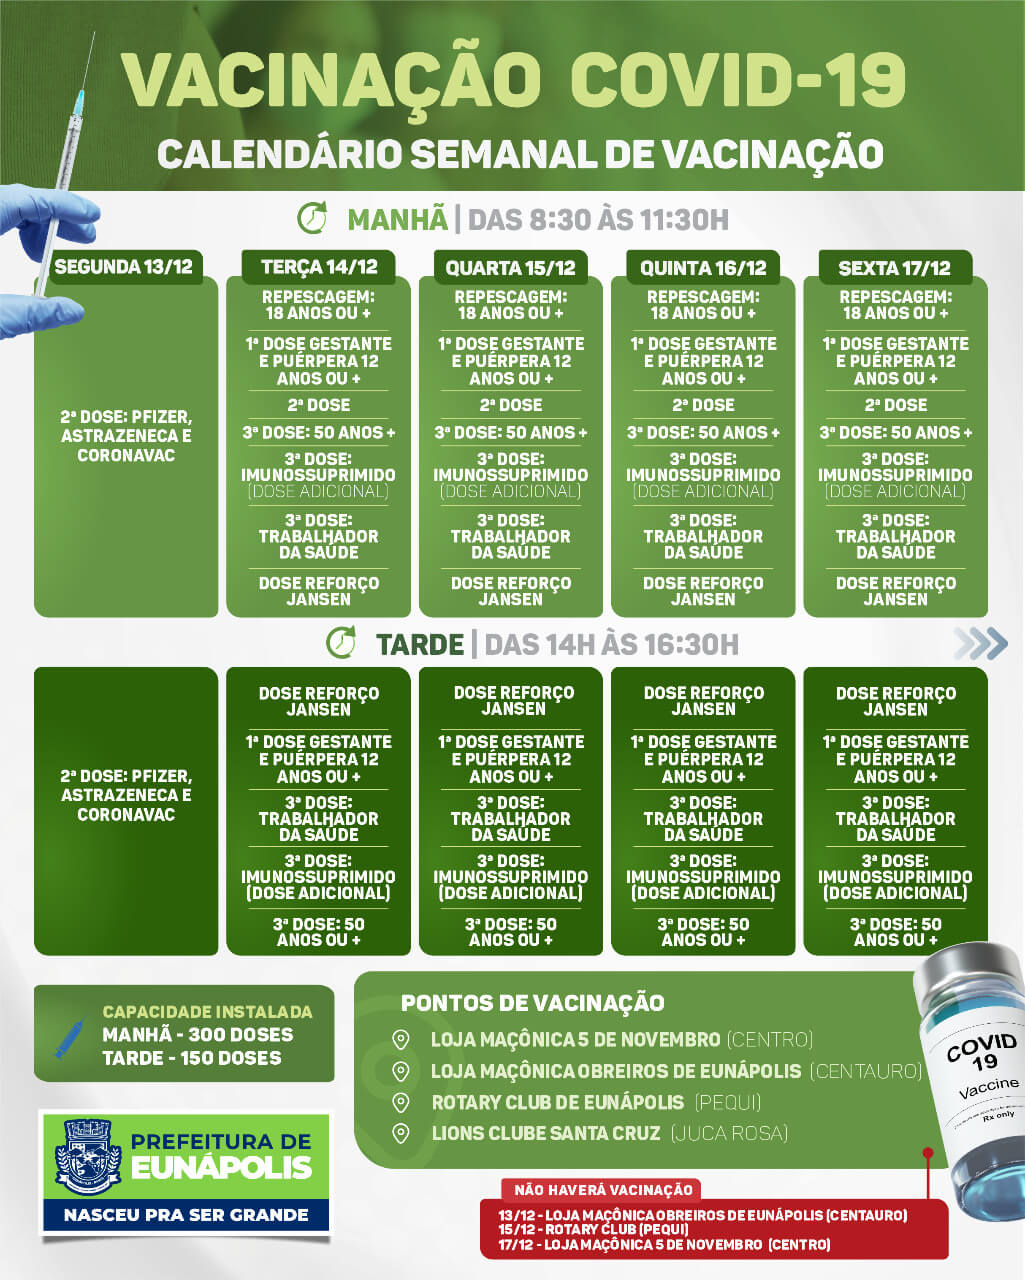 EUNÁPOLIS: CALENDÁRIO SEMANAL DE VACINAÇÃO COVID-19 | DE 13/12 A 17/12 27